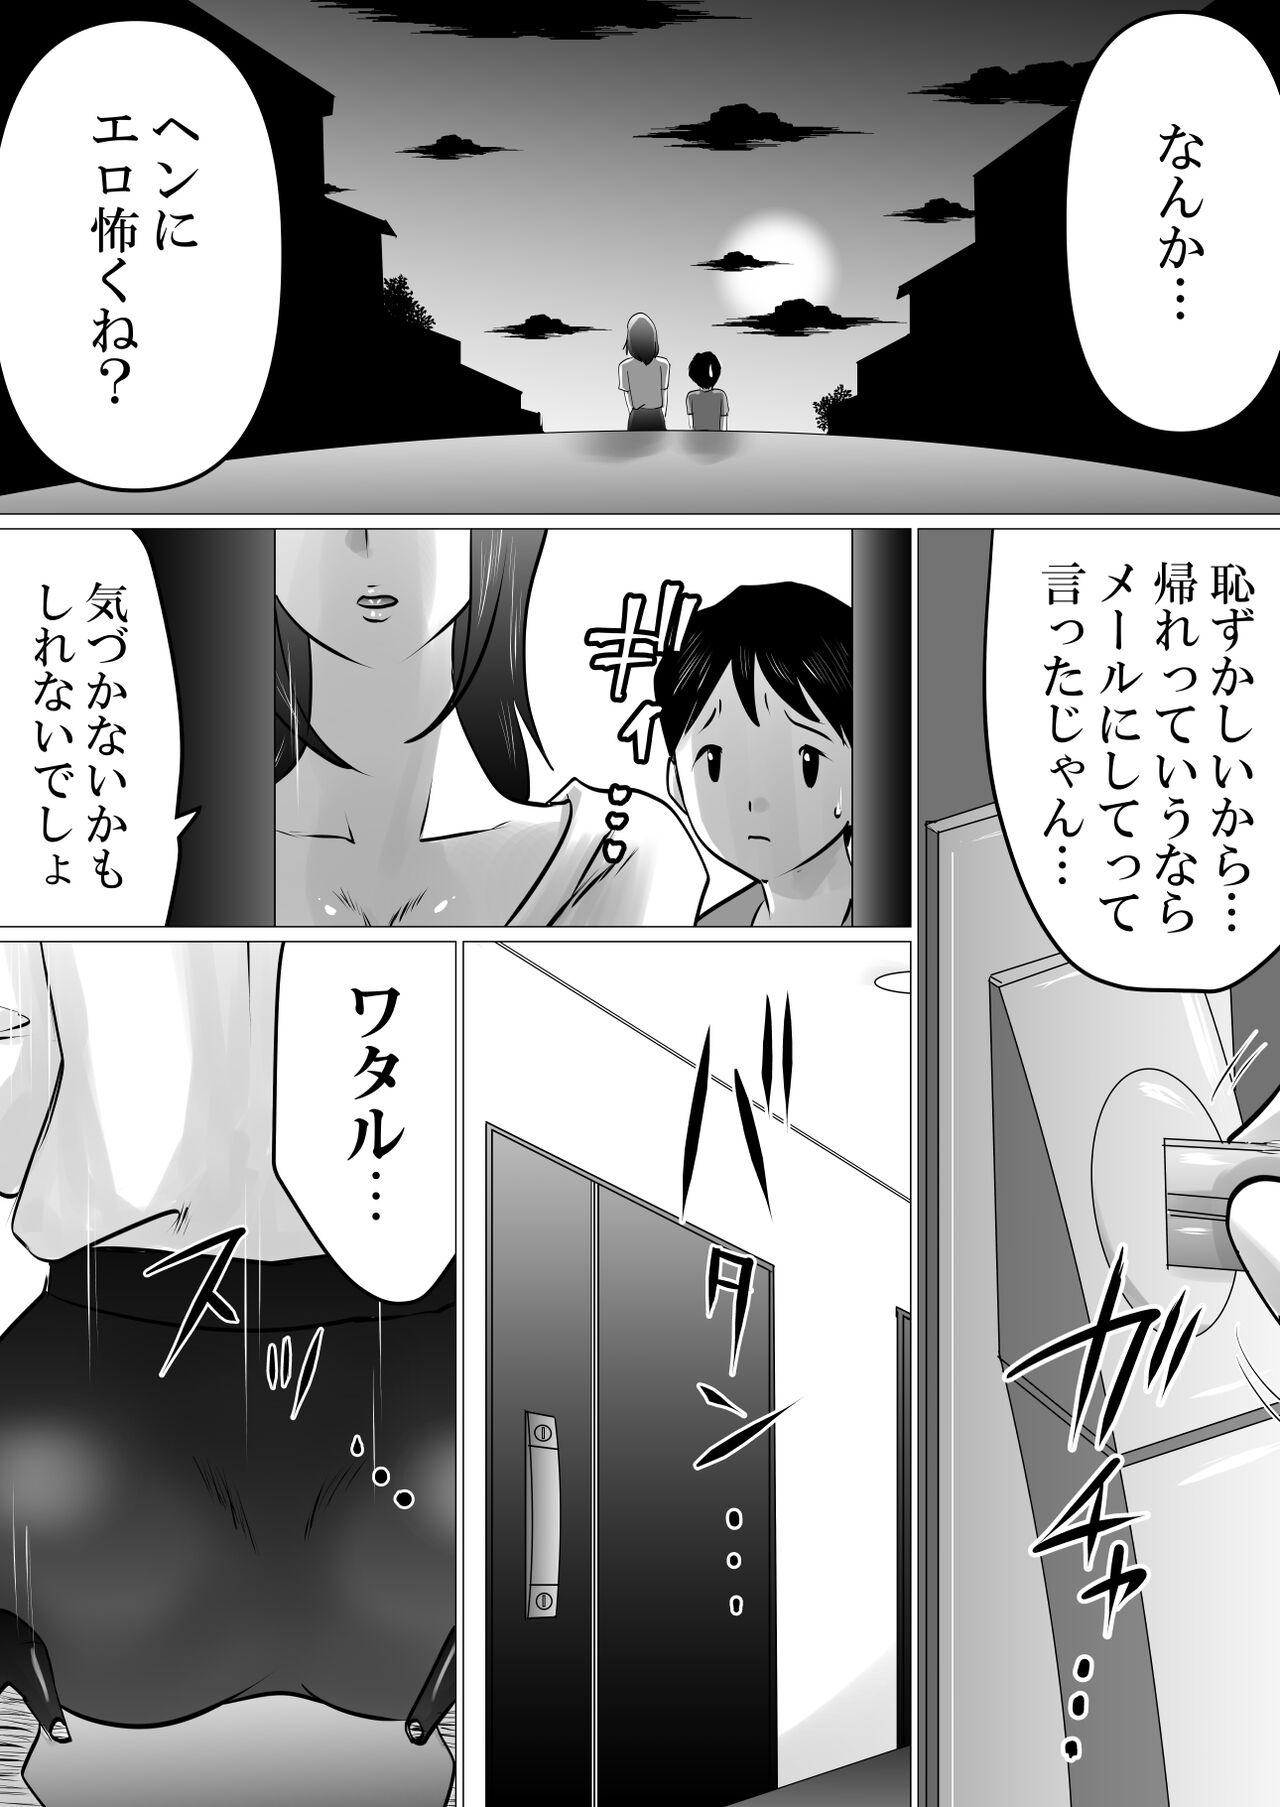 Gapes Gaping Asshole Bokushika Shiranai, Cool na Haha no Ura no Kao. - Original Police - Page 4